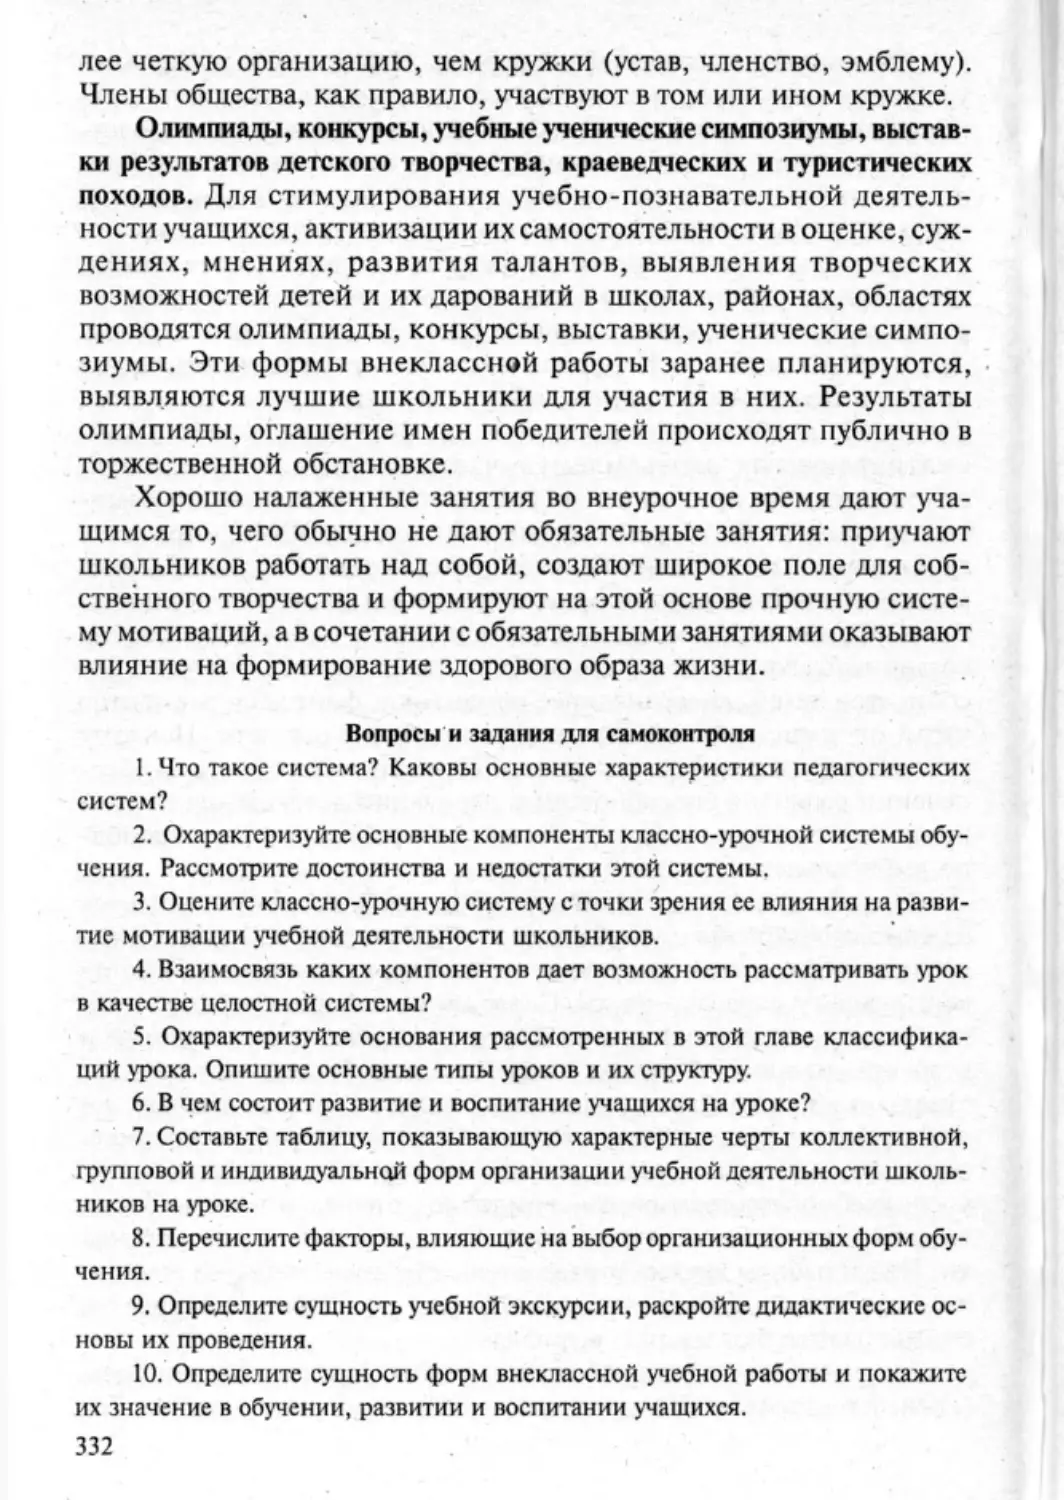 Загрекова Л.В., Николаева В.В - 0333